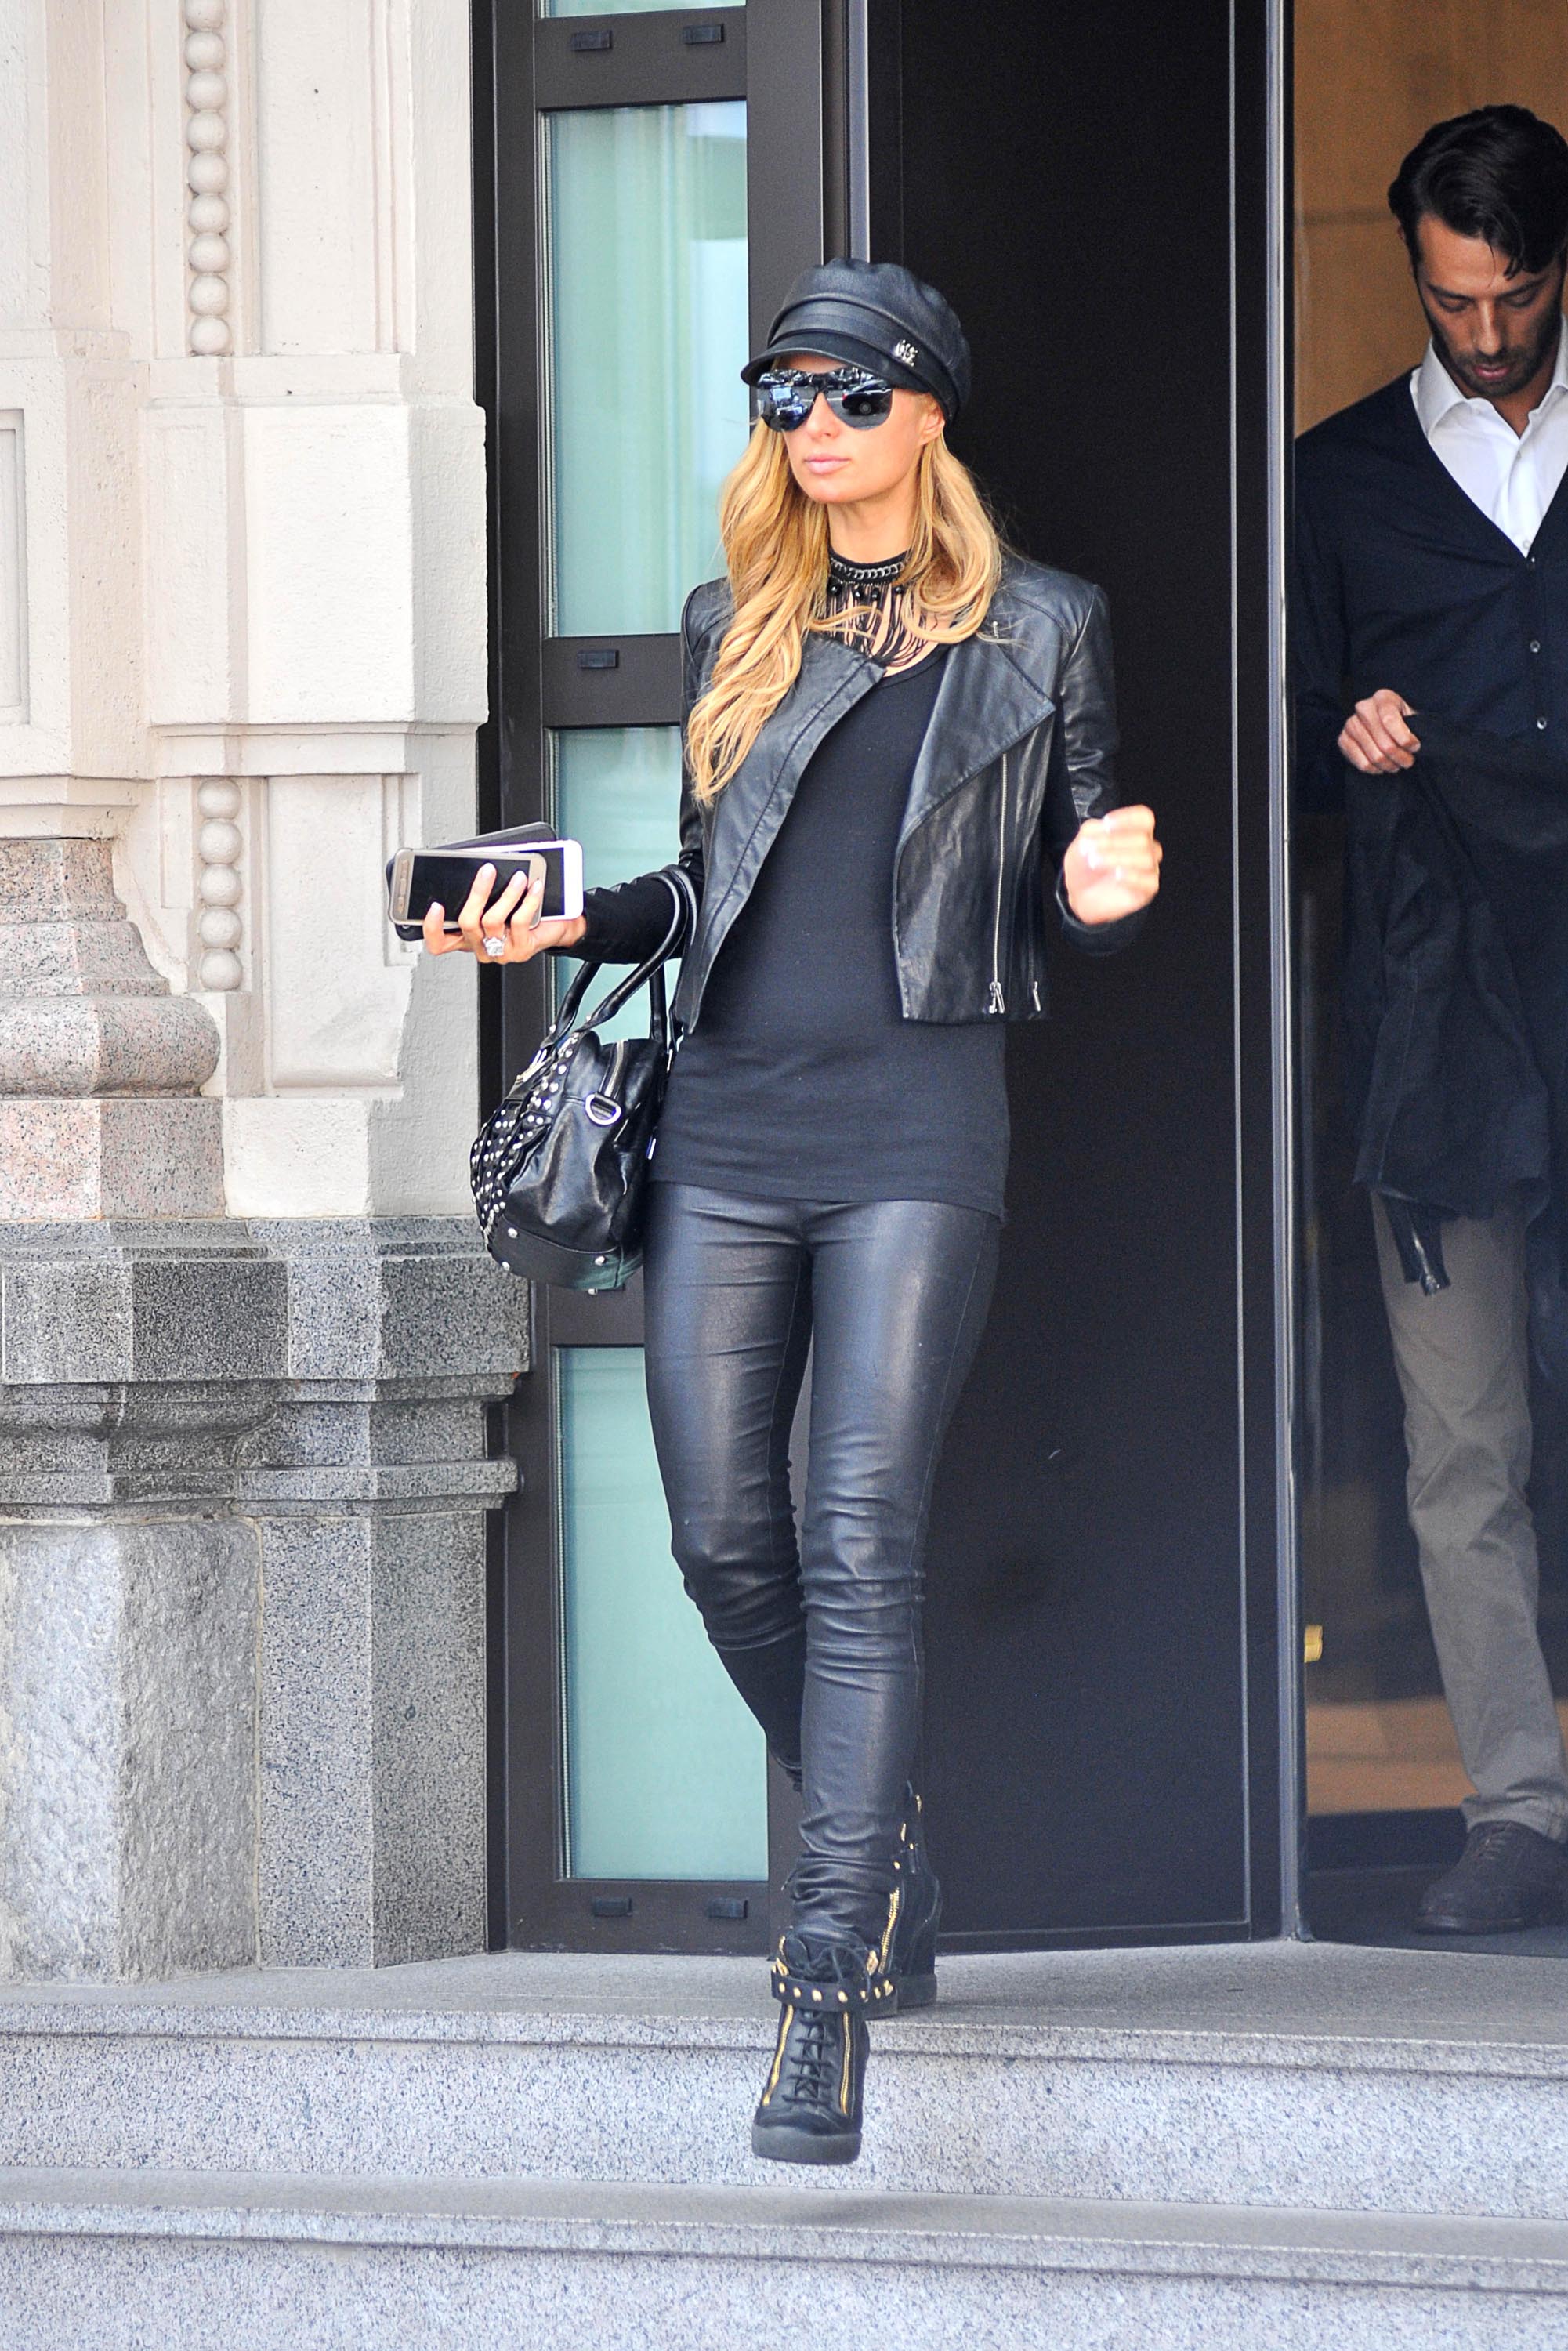 Paris Hilton seen in Milan for Fashion Week